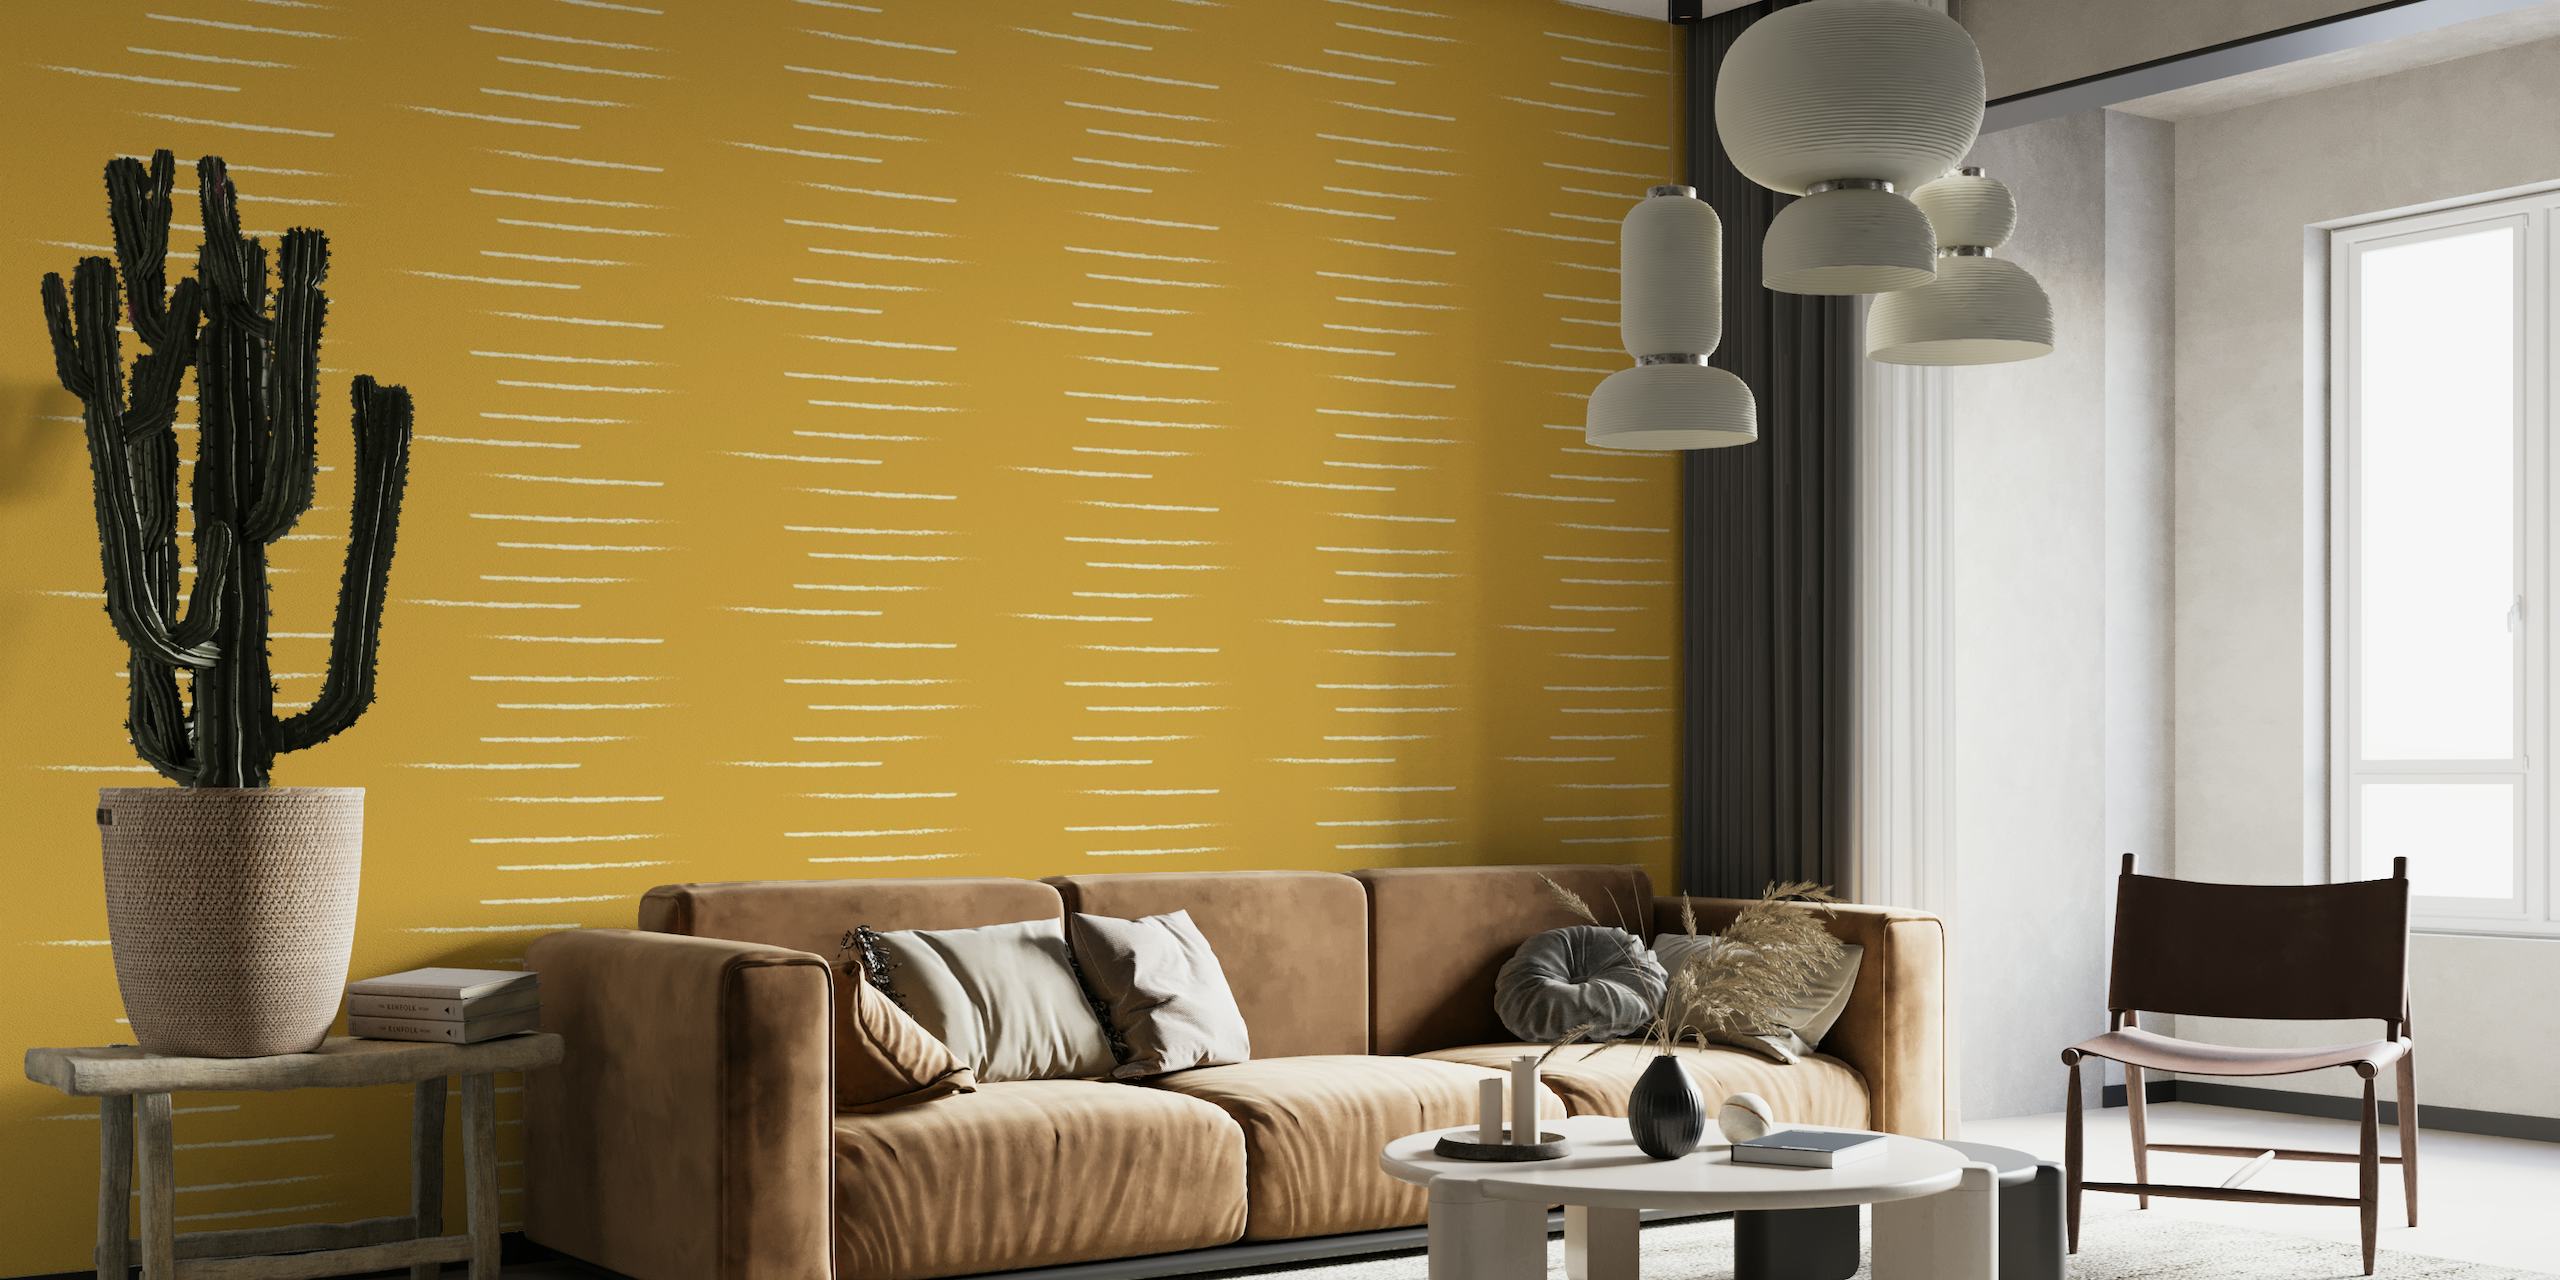 Fotomural de rayas horizontales en tonos beige mostaza reflejando un estilo cálido y minimalista